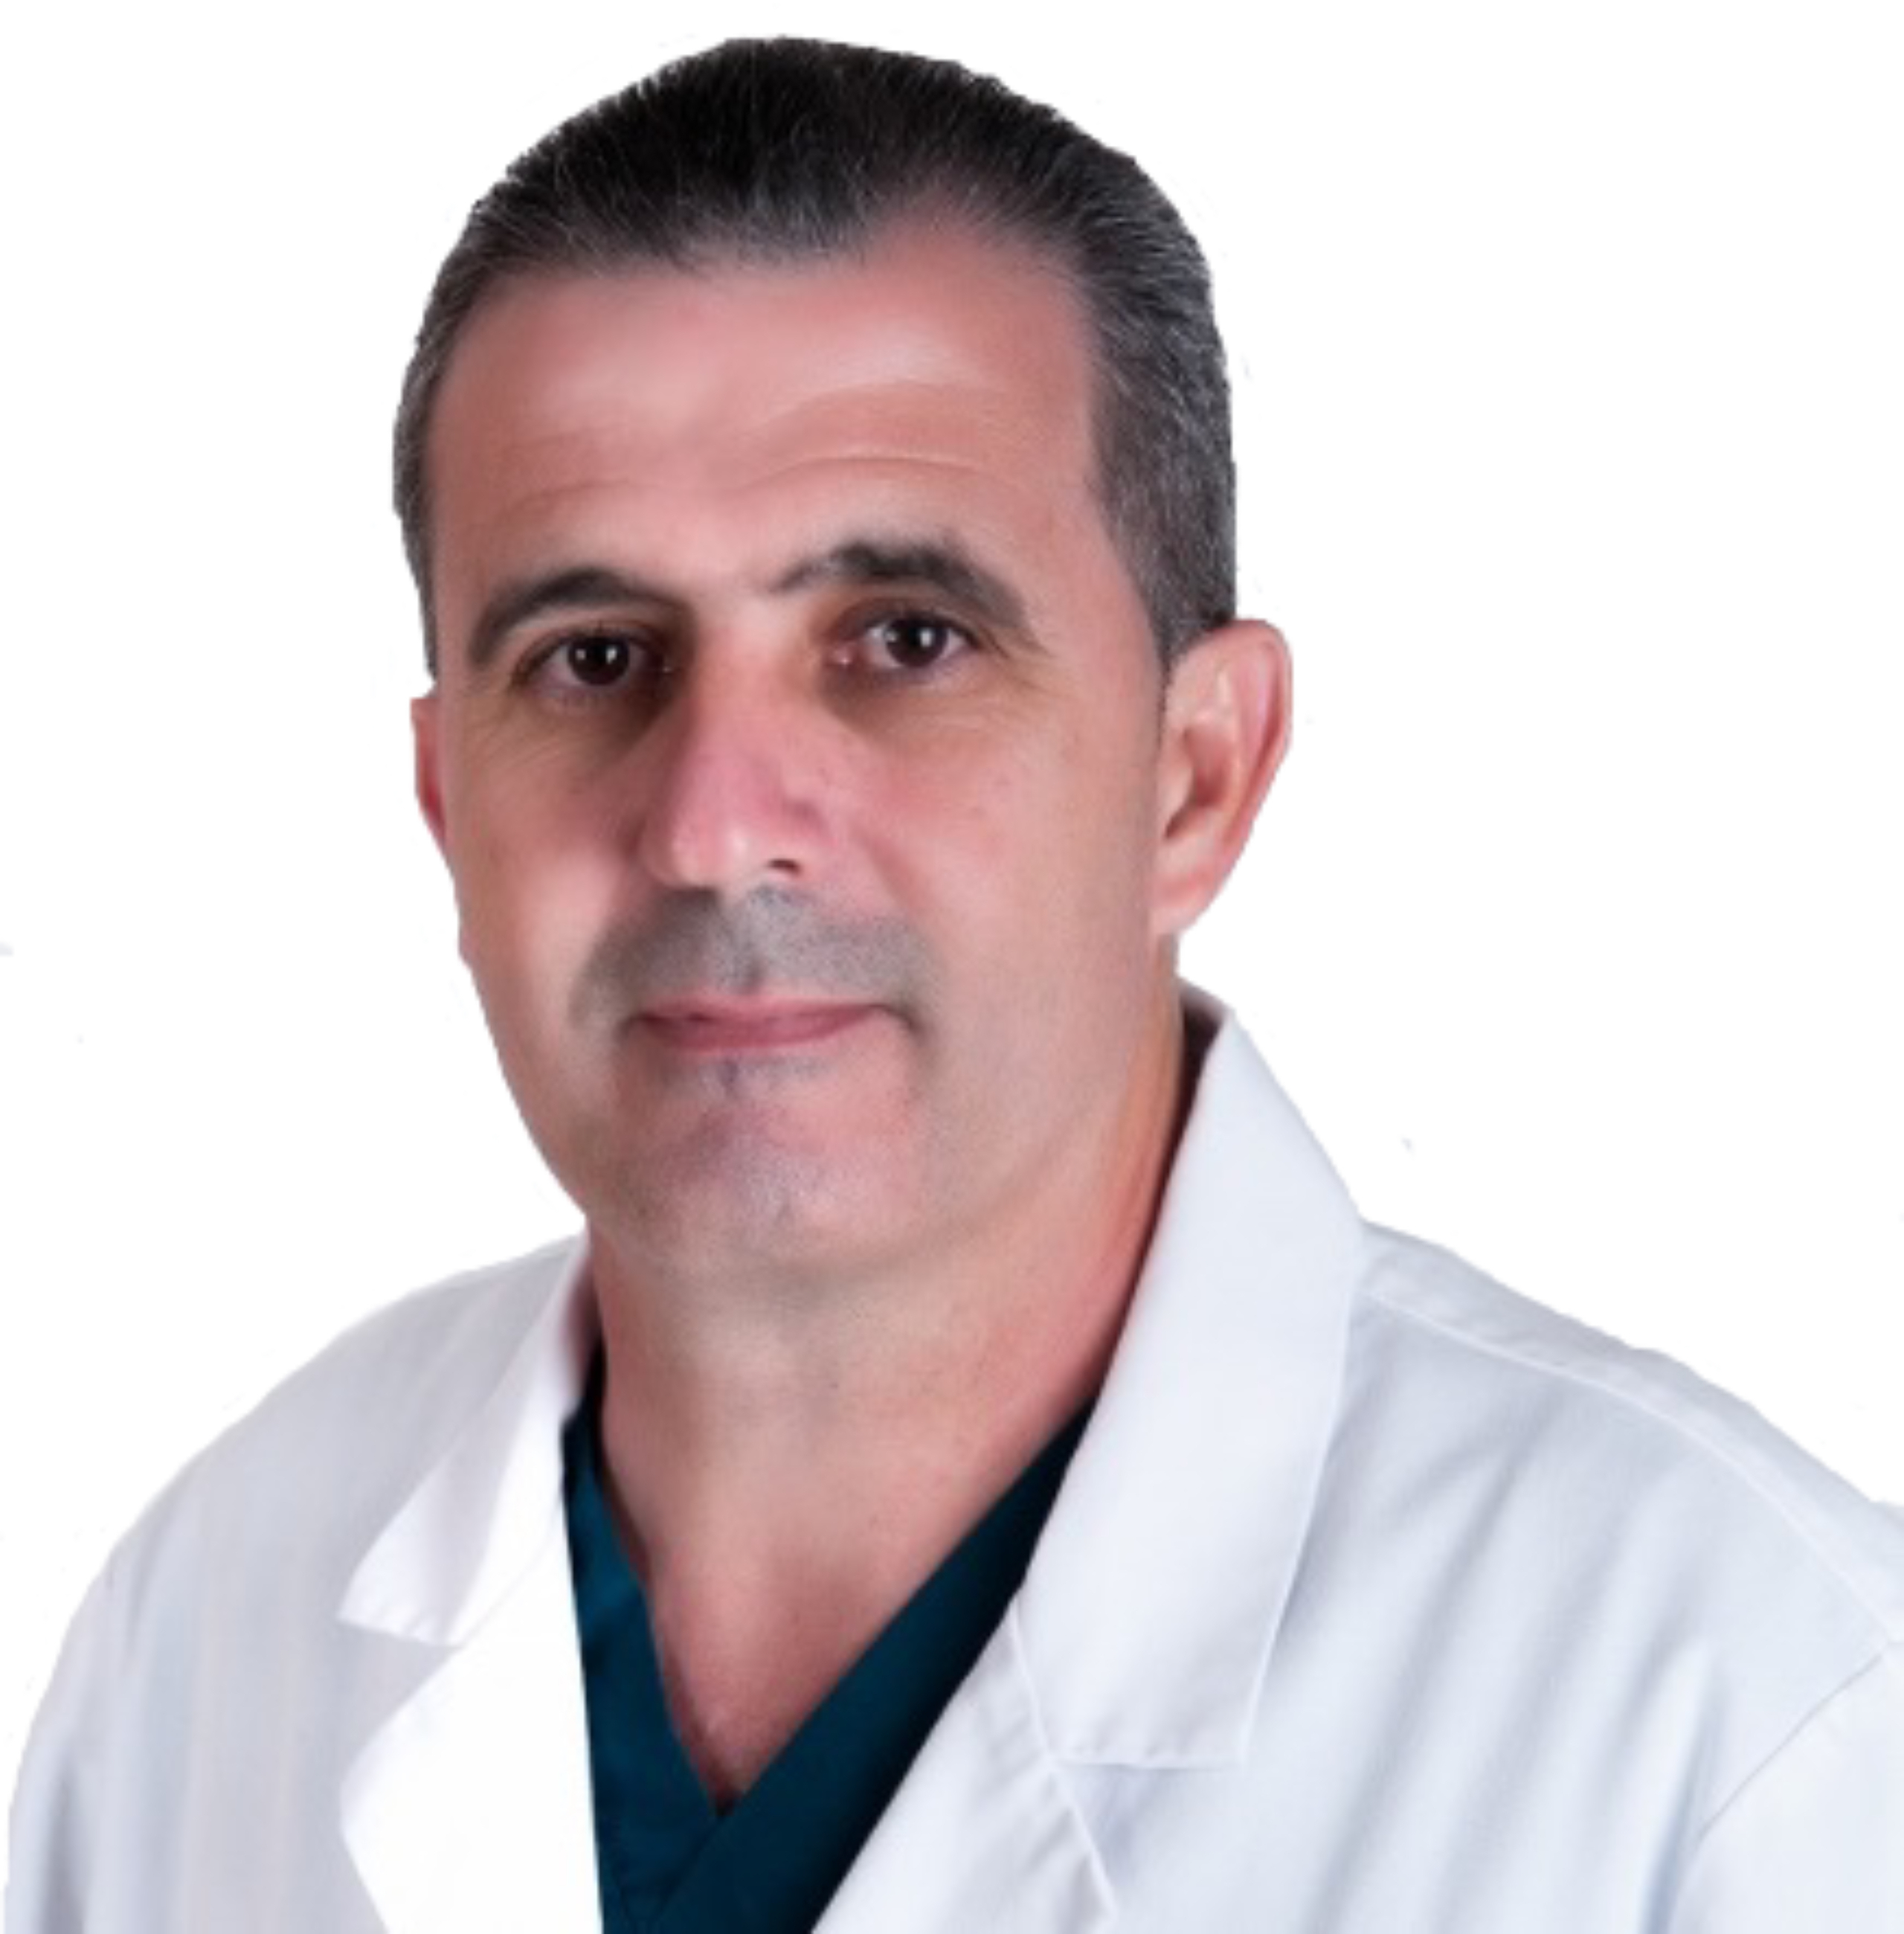 Dr. Aniceto Cabrera